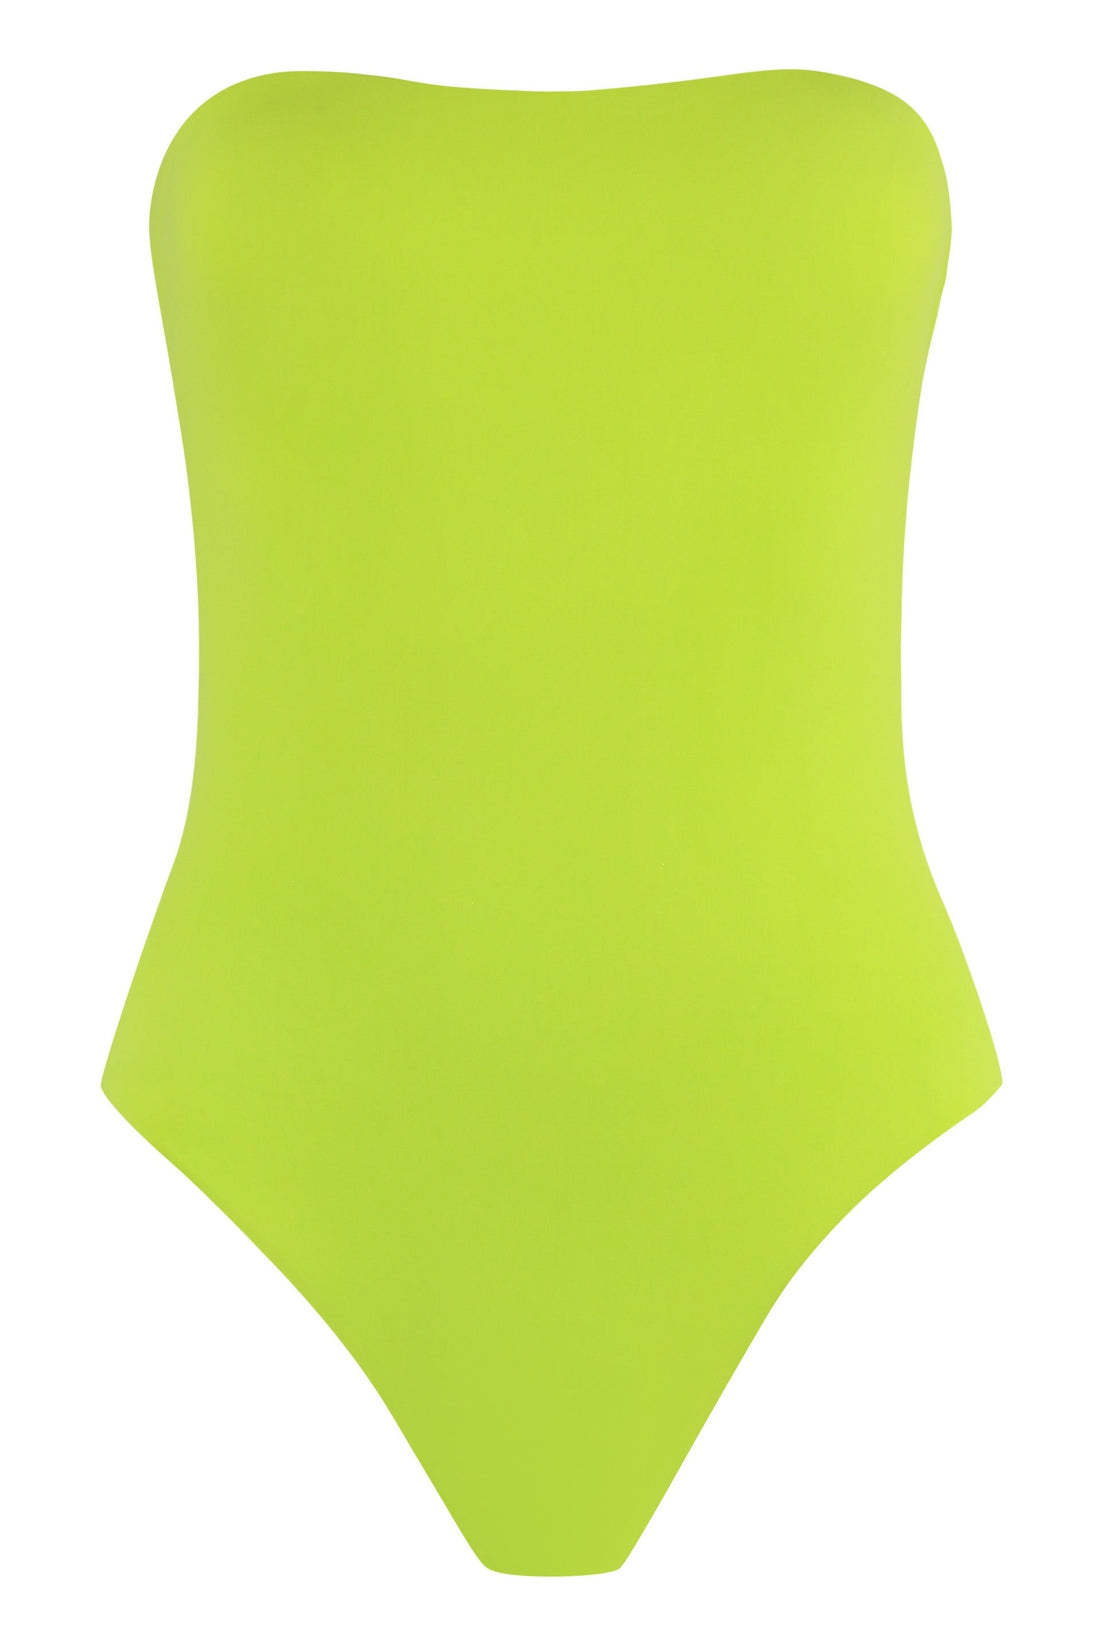 Lido-OUTLET-SALE-Sedici one-piece swimsuit-ARCHIVIST